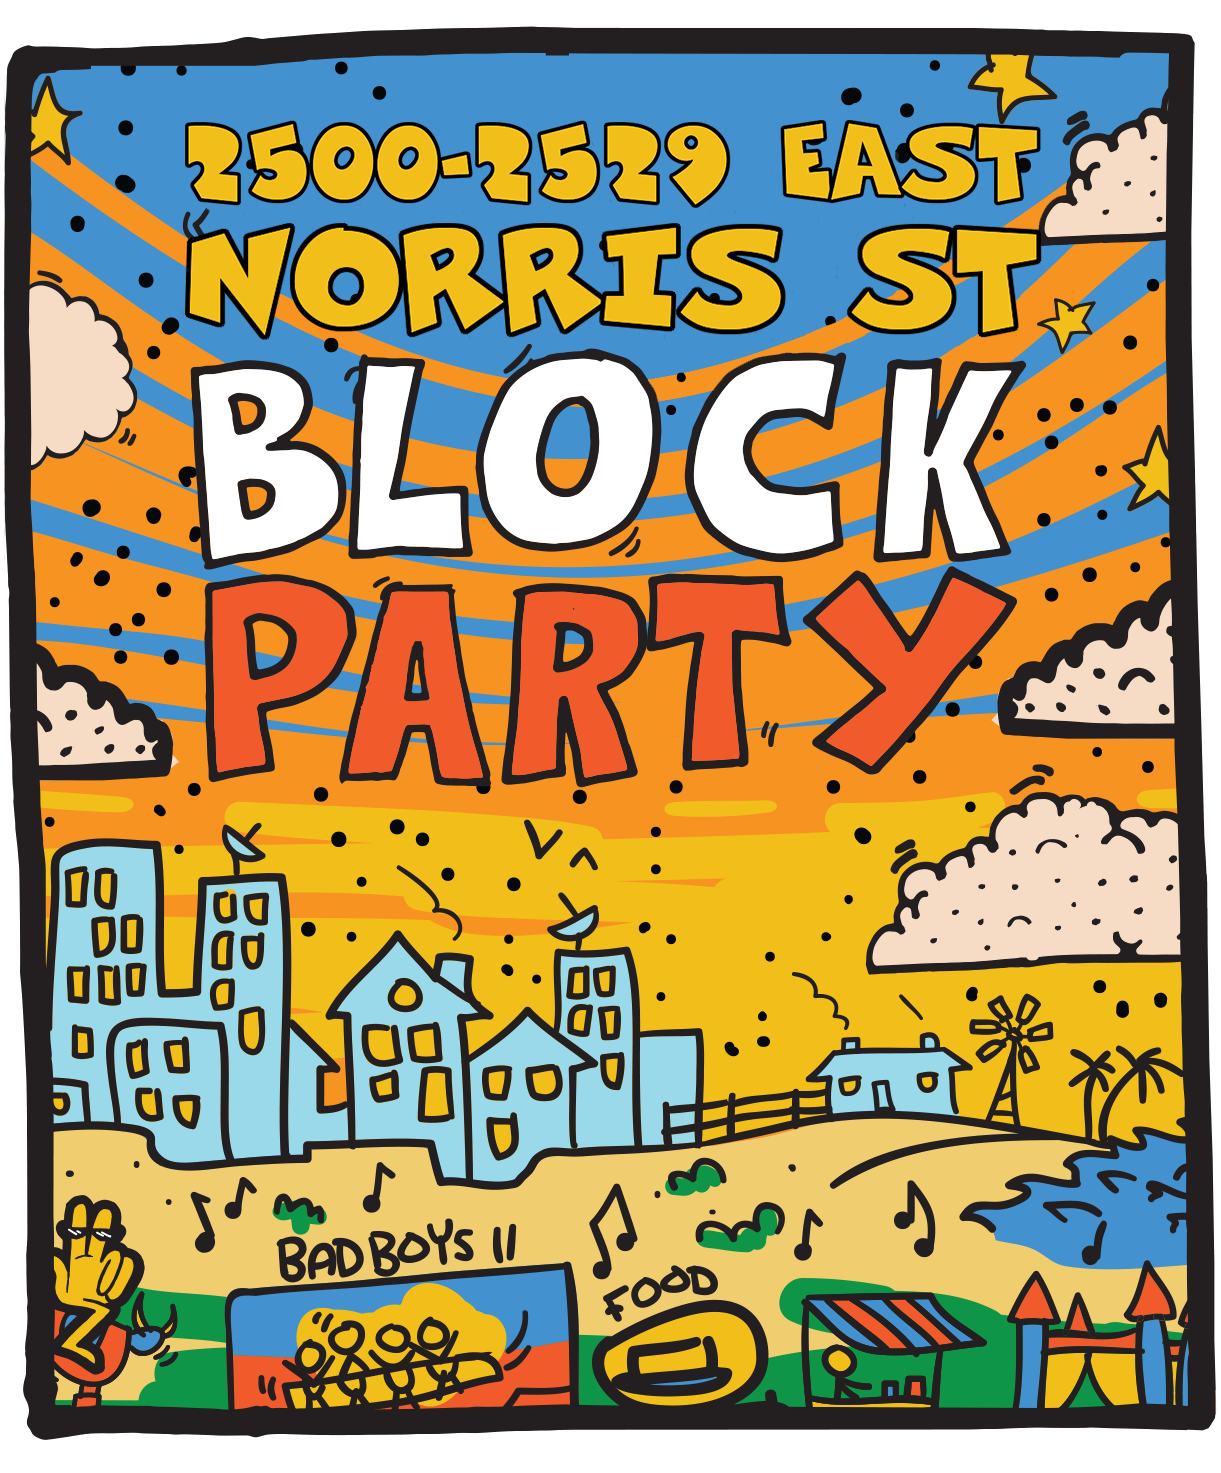 2500-2529 East Norris Street Block Party